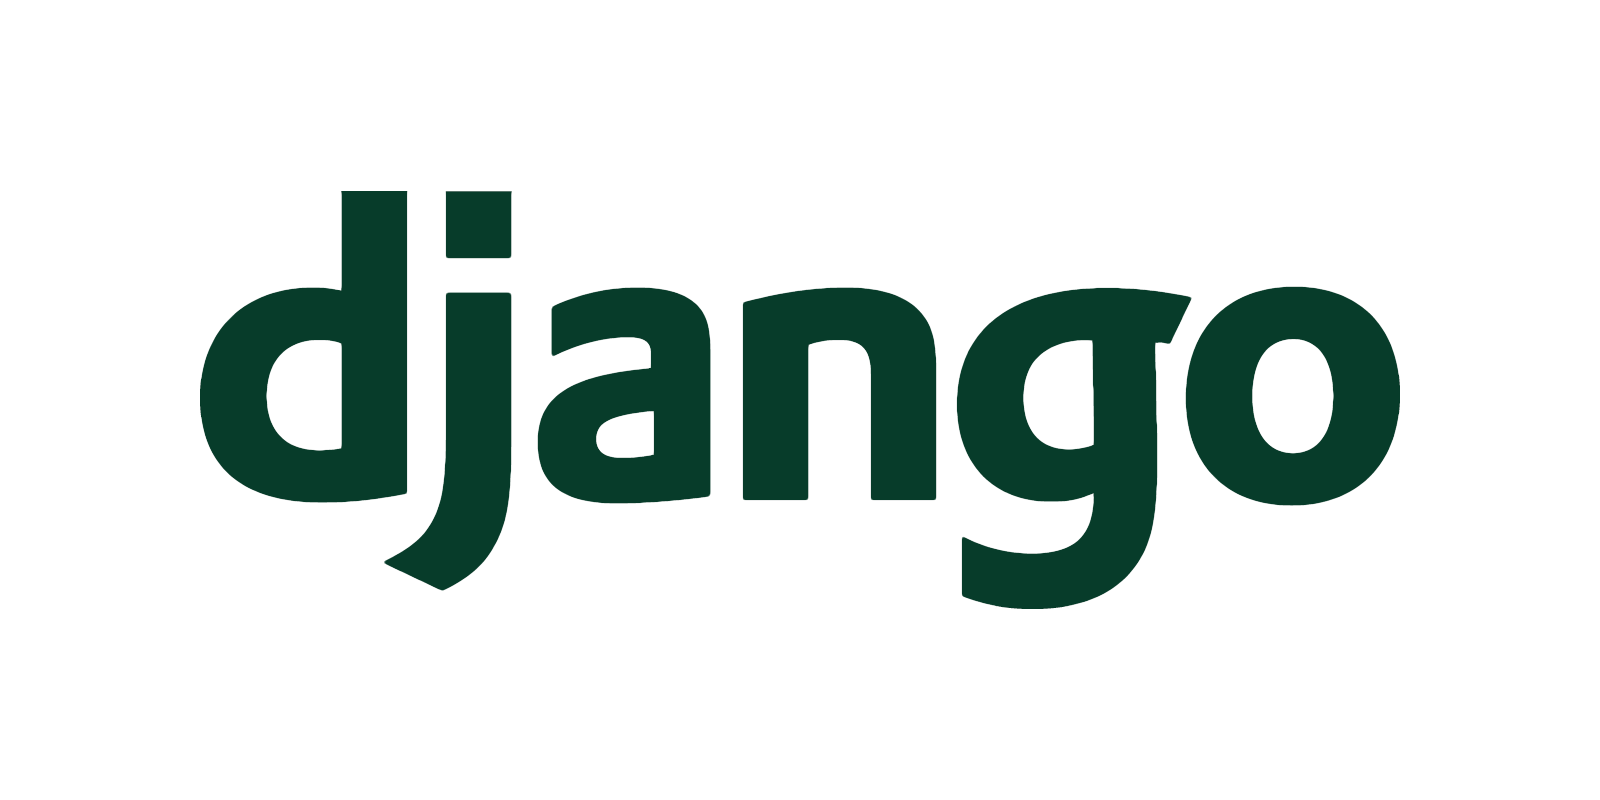 Extending Django's default User Model